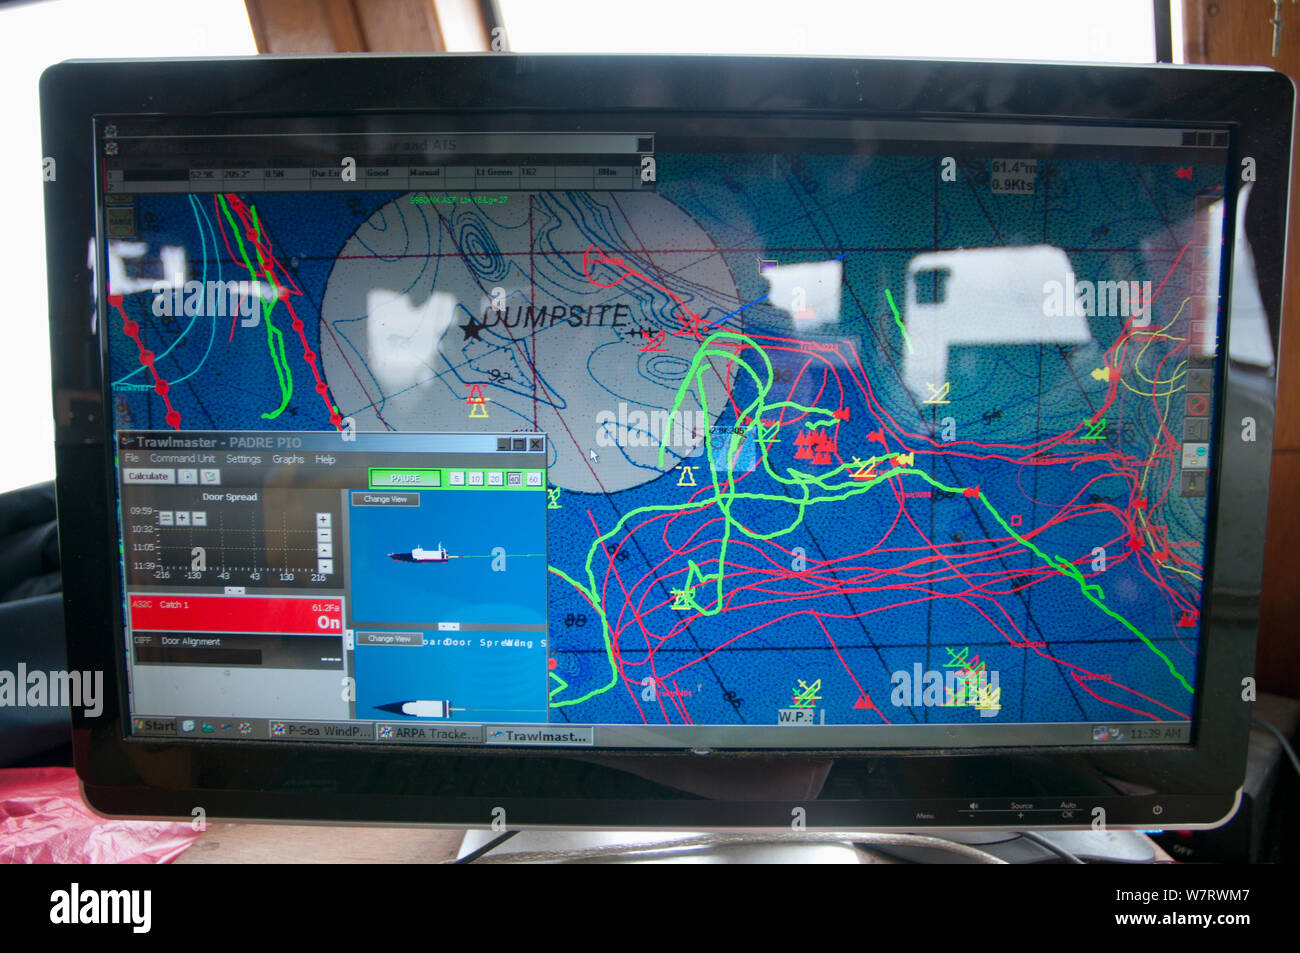 Computer Tracking für die Seeschifffahrt Informationen an Bord kommerzielle Fischtrawler. Stellwagen Banken, New England, den Vereinigten Staaten, über den Nordatlantik Stockfoto